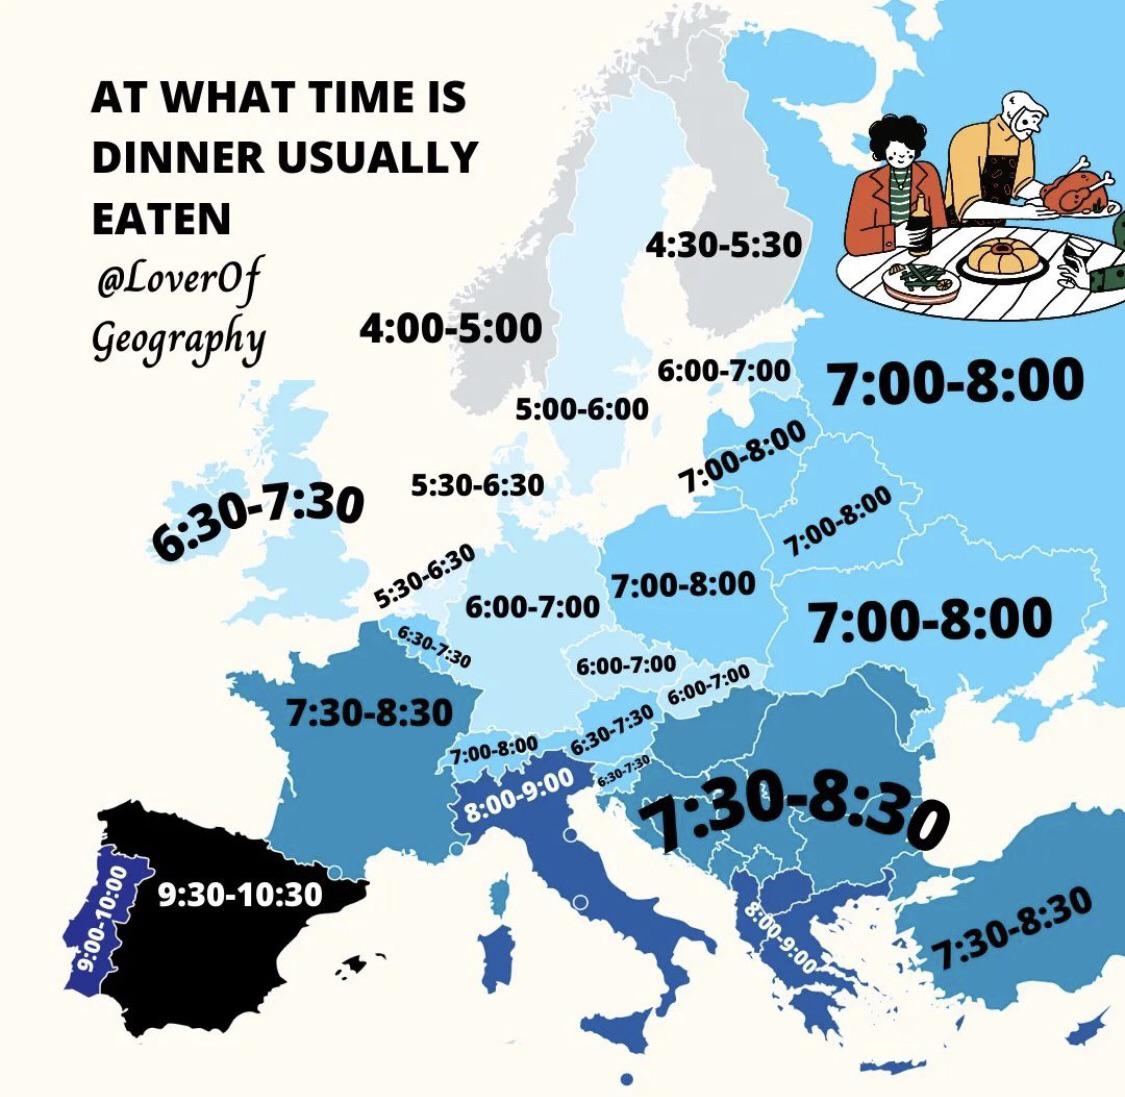 Najczęstsza pora jedzenia kolacji w Europie